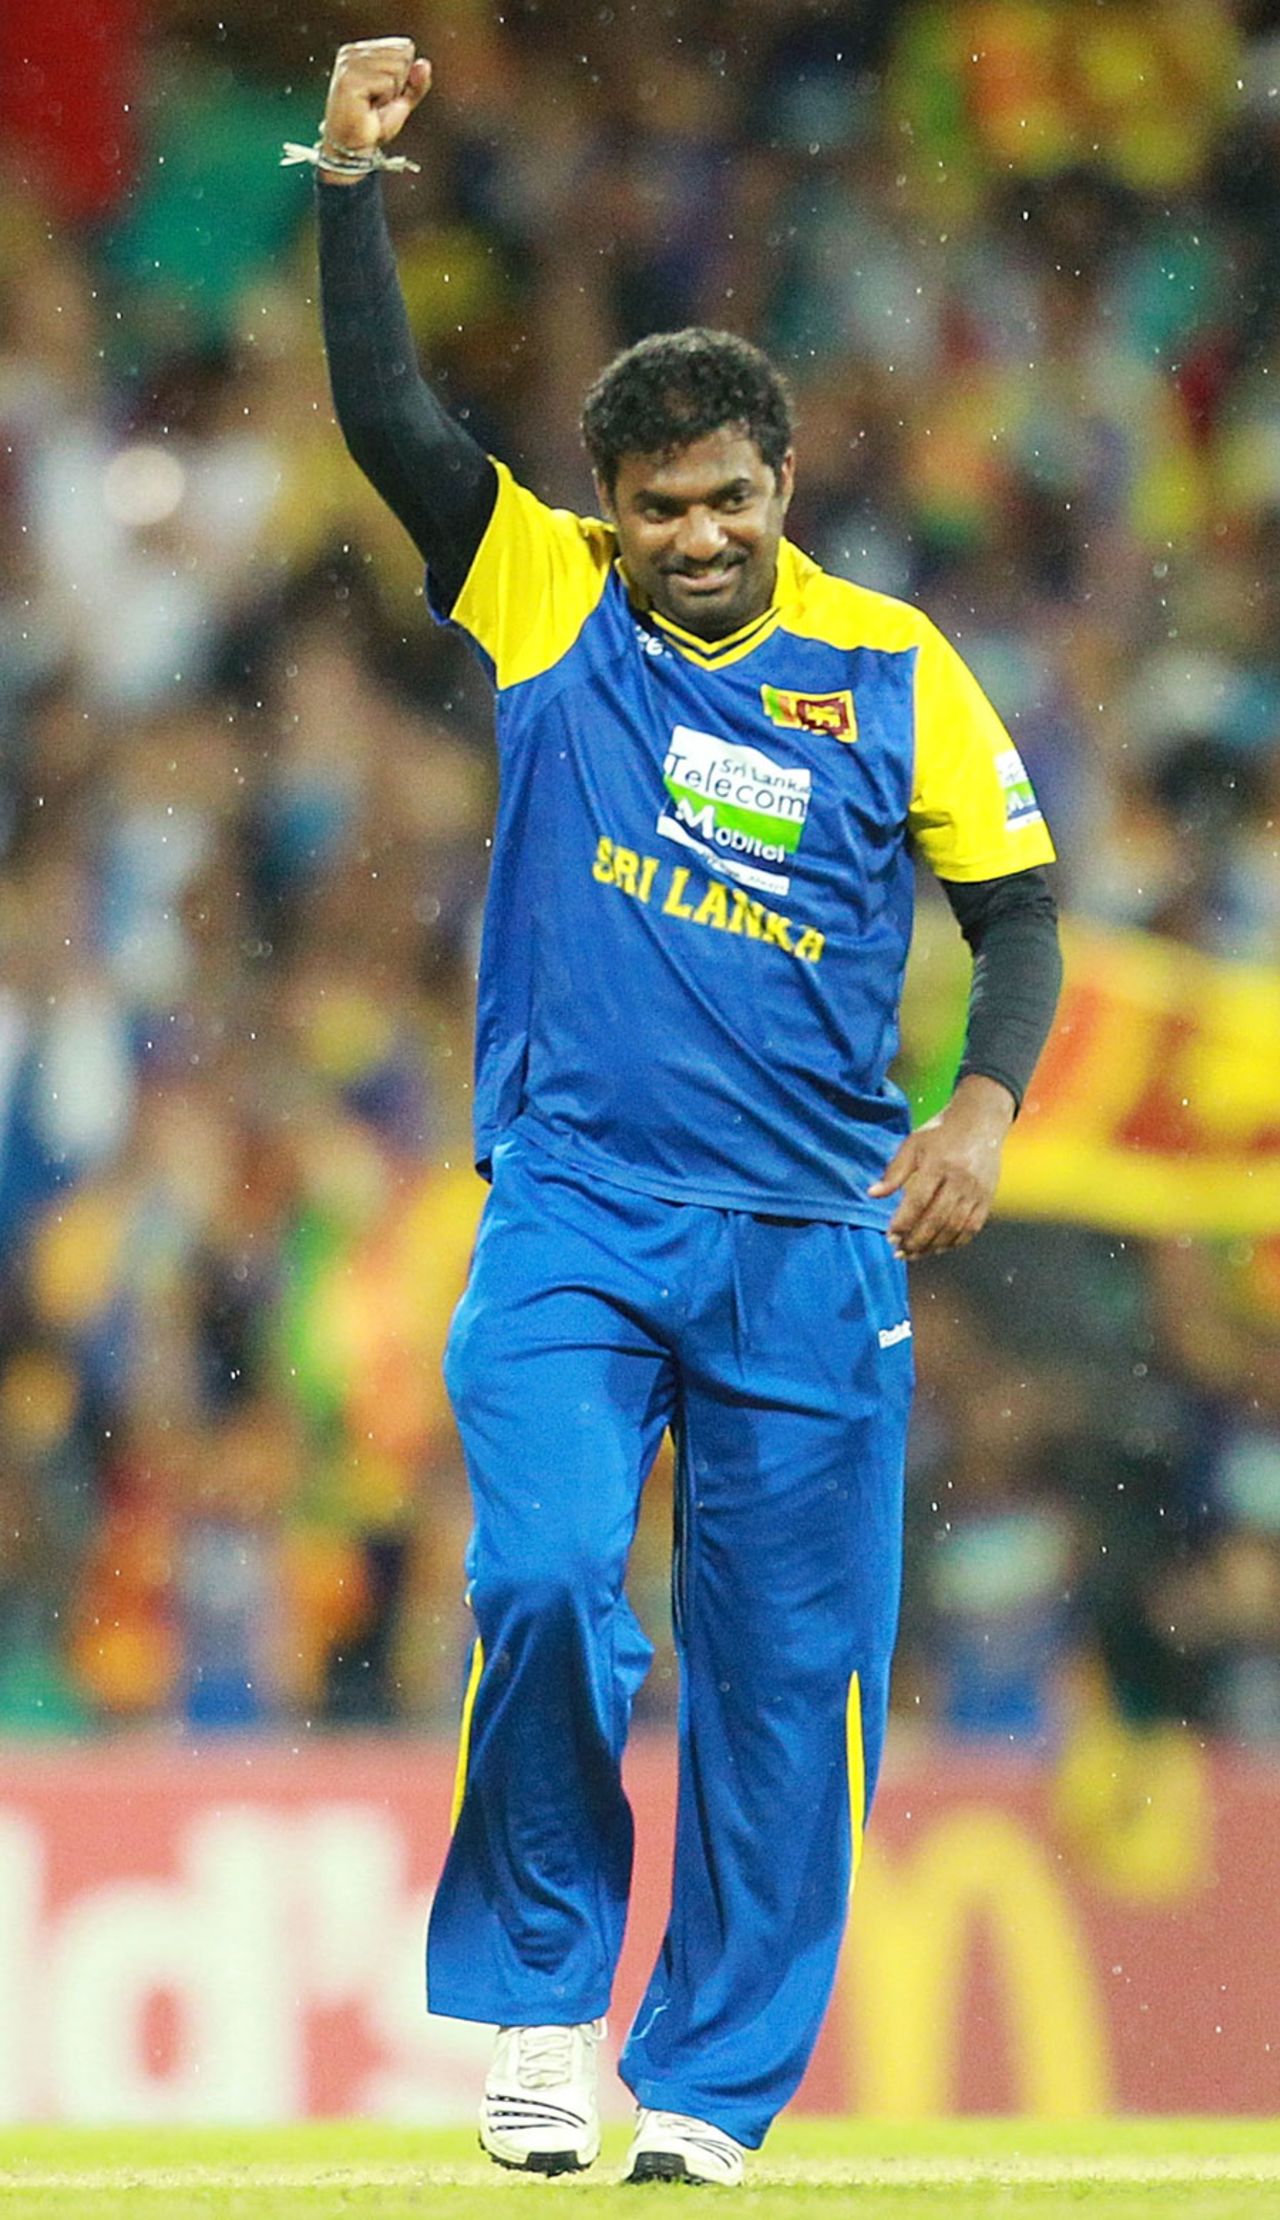 Muttiah Muralitharan celebrates yet another wicket, Australia v Sri Lanka, 2nd ODI, Sydney, November 5, 2010